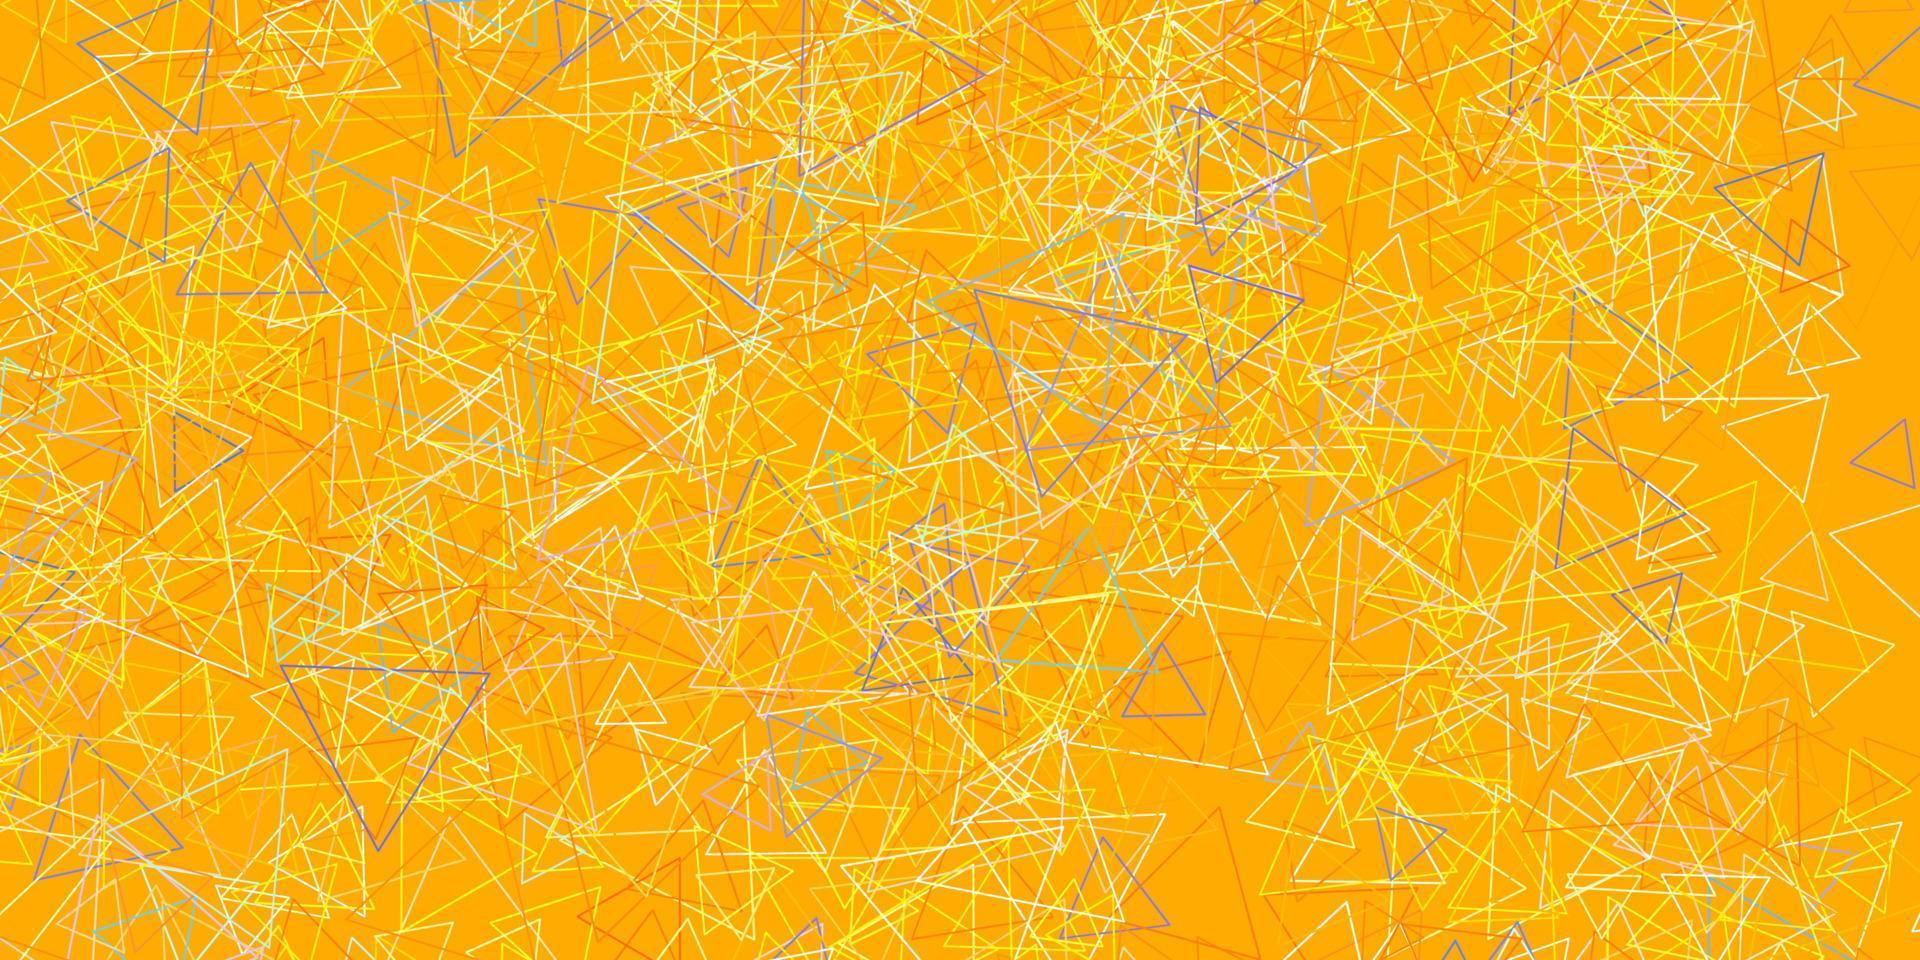 hellblaue, gelbe Vektortextur mit zufälligen Dreiecken. vektor